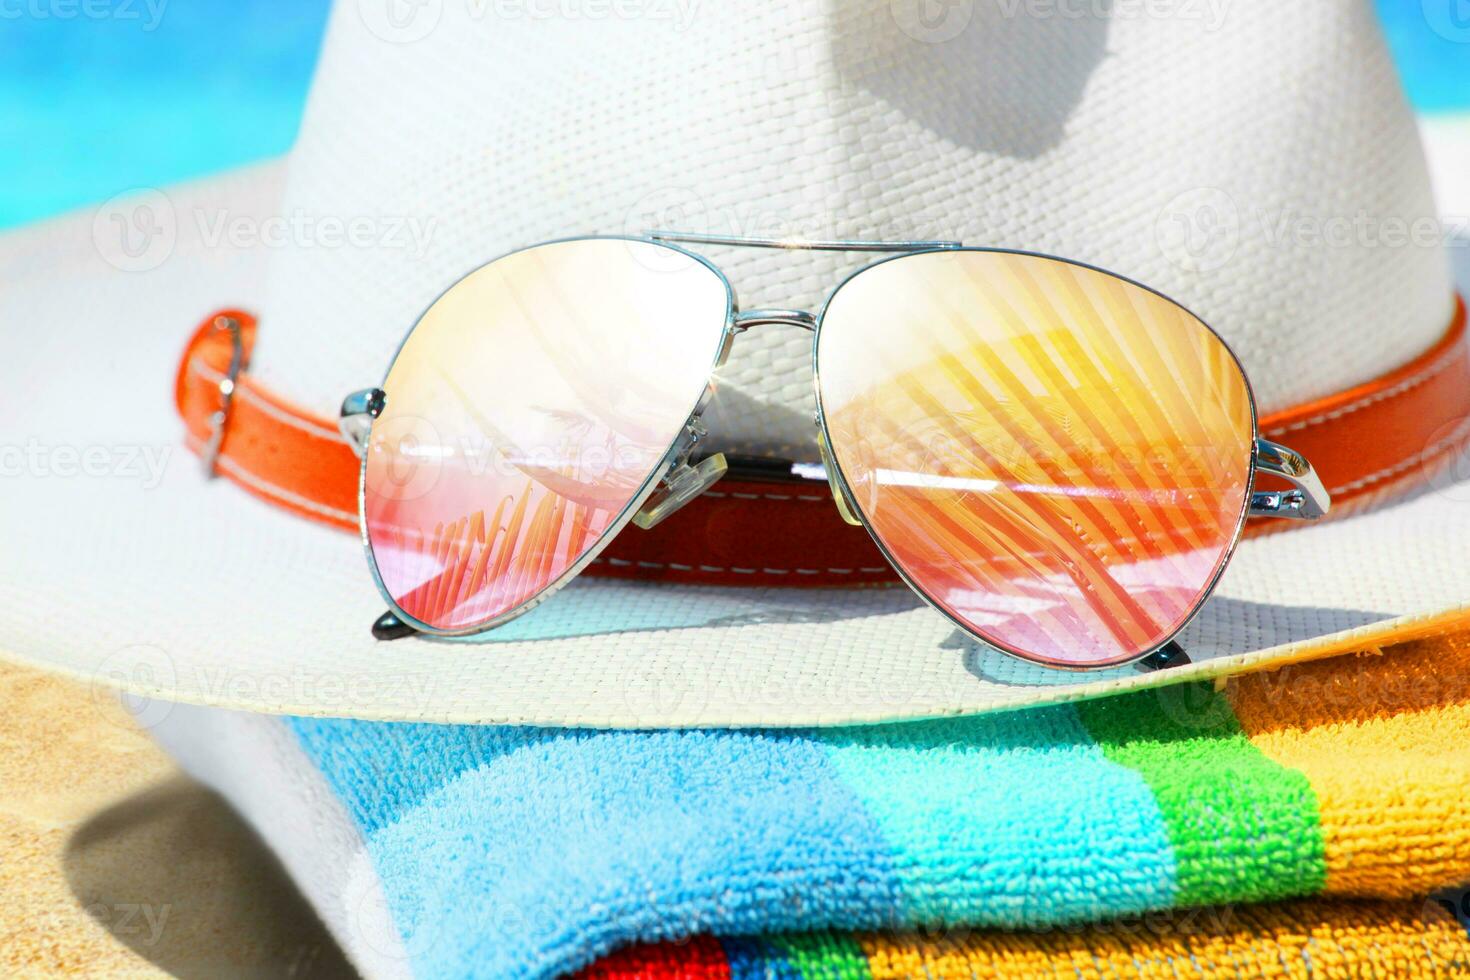 sommar tropisk strand bakgrund med solglasögon och hatt. foto